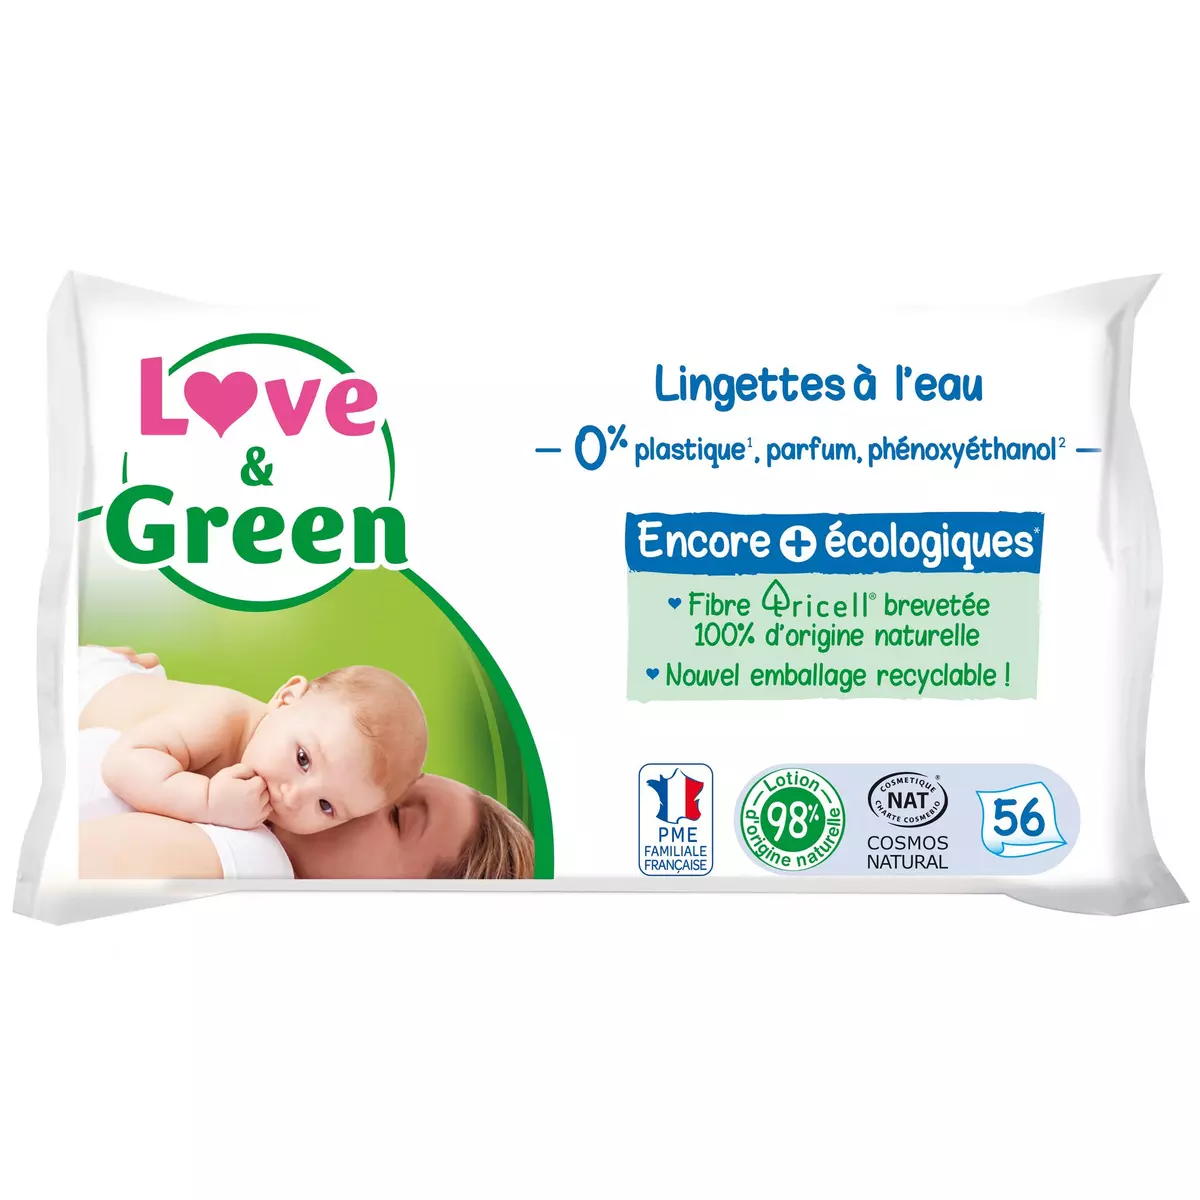 LOVE & GREEN Lingettes nettoyantes à l'eau pour bébé 56 lingettes